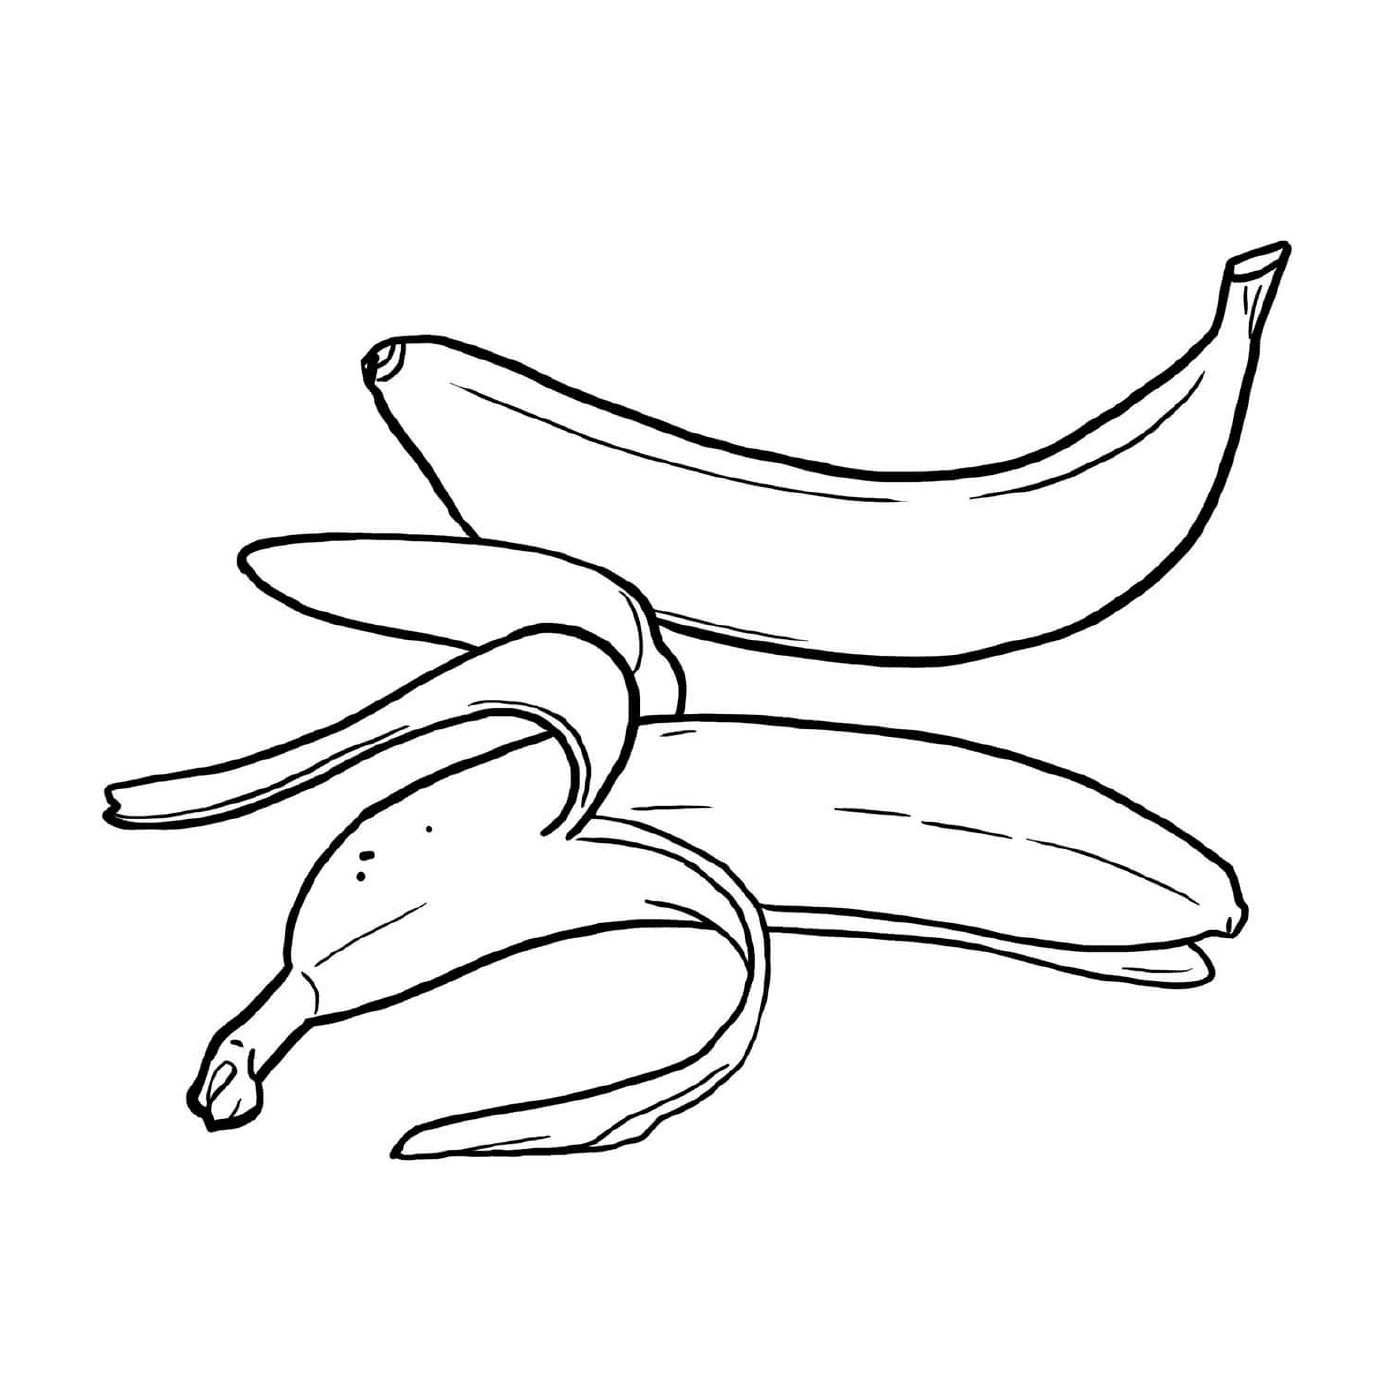  放在一张桌子上的若干香蕉 